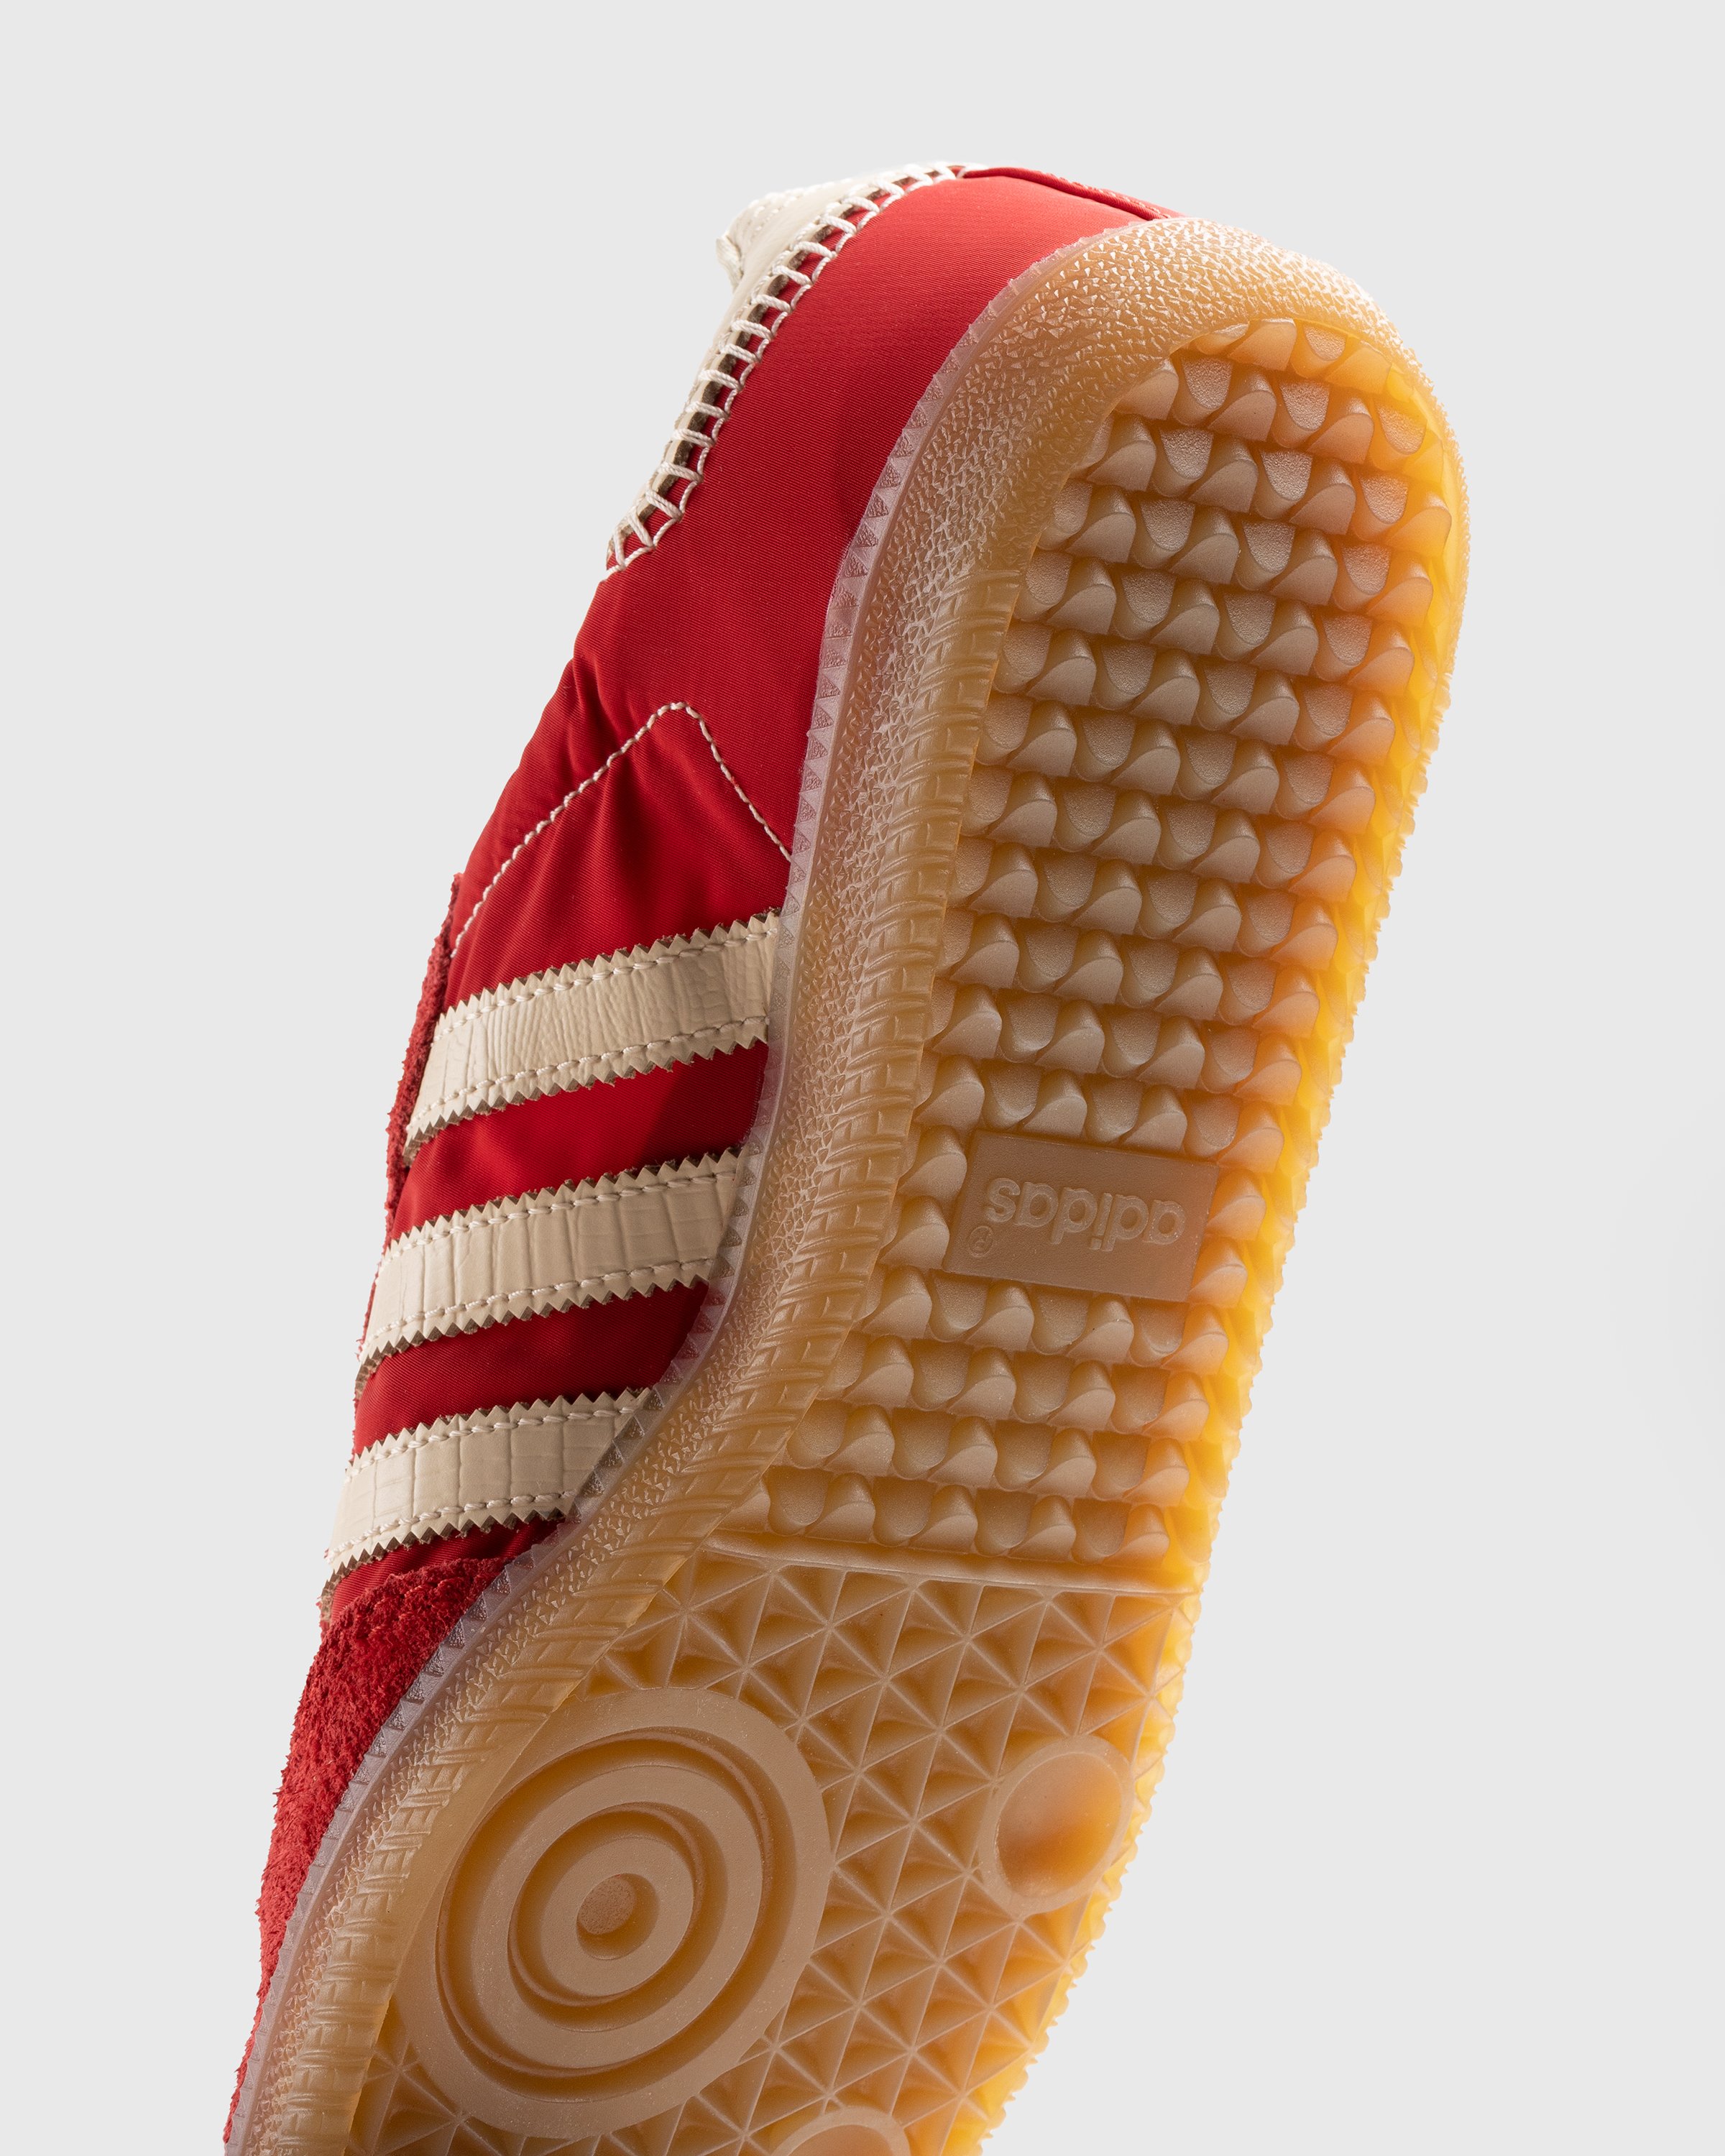 Adidas x Wales Bonner - WB Samba Scarlet/Ecru Tint/Scarlet - Footwear - Red - Image 6